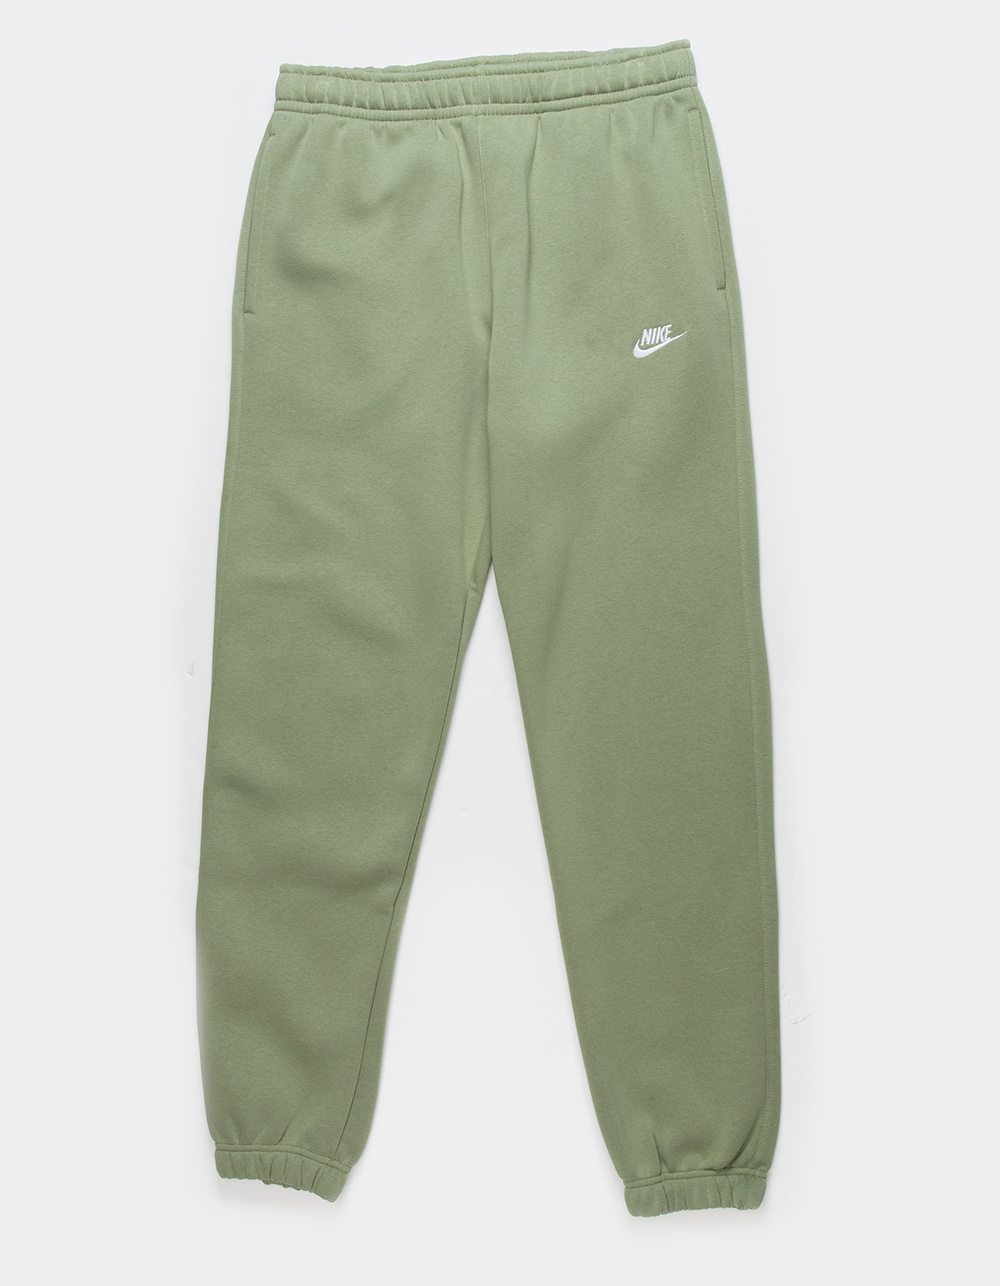 Nike sweatpants for Men